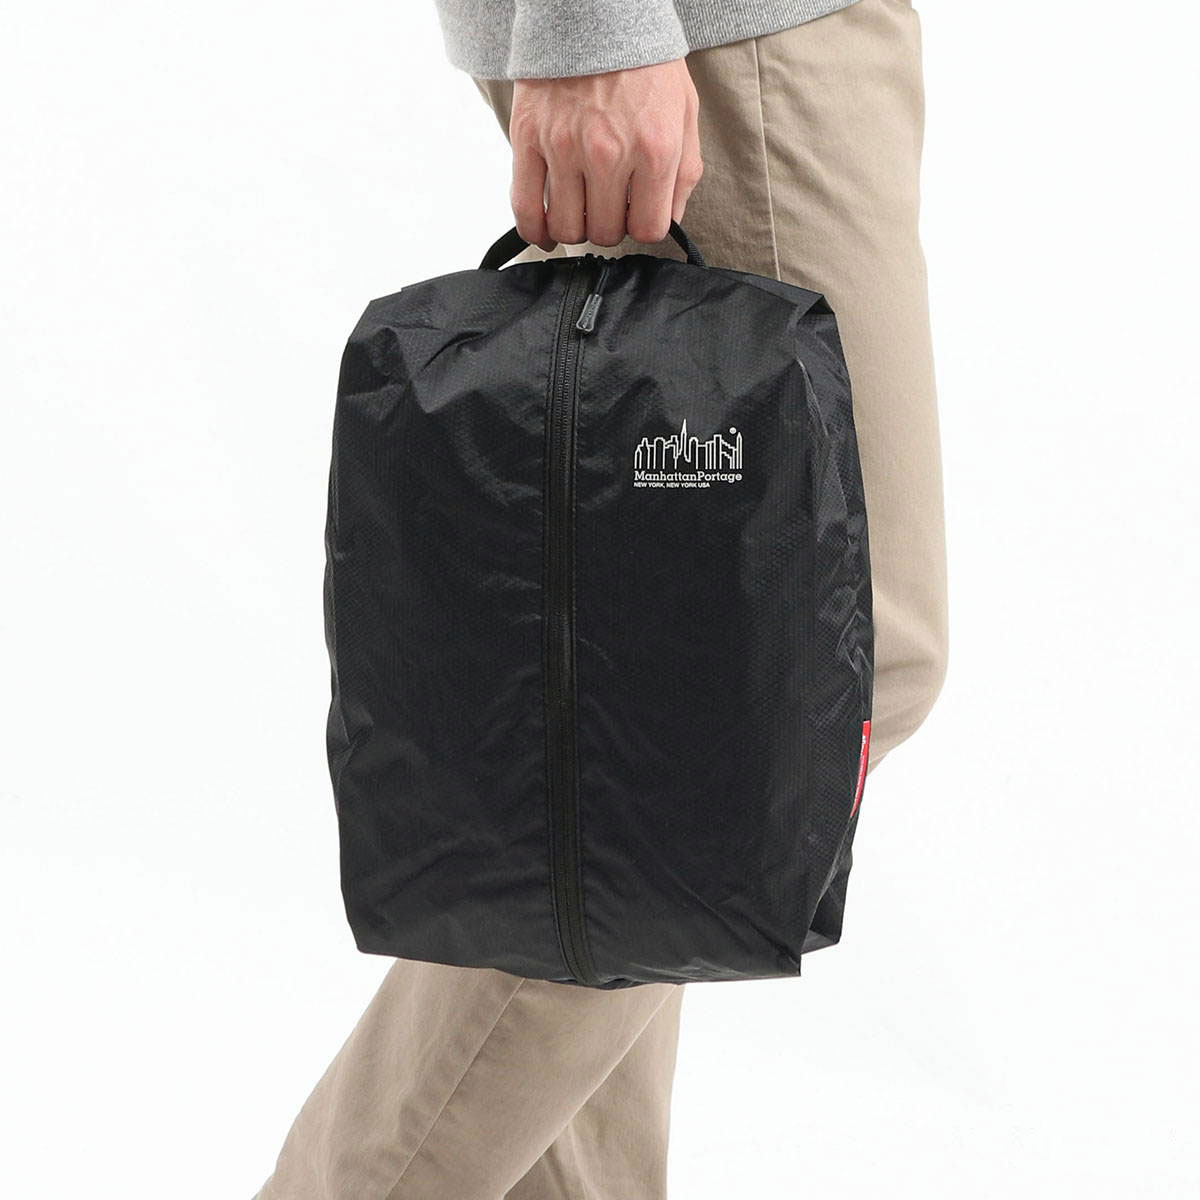 【日本正規品】Manhattan Portage マンハッタンポーテージ Greenway Carry-All Accessory Bag Ripstop Nylon MP2016RN ギャレリアモール/.galleria【全品送料無料】